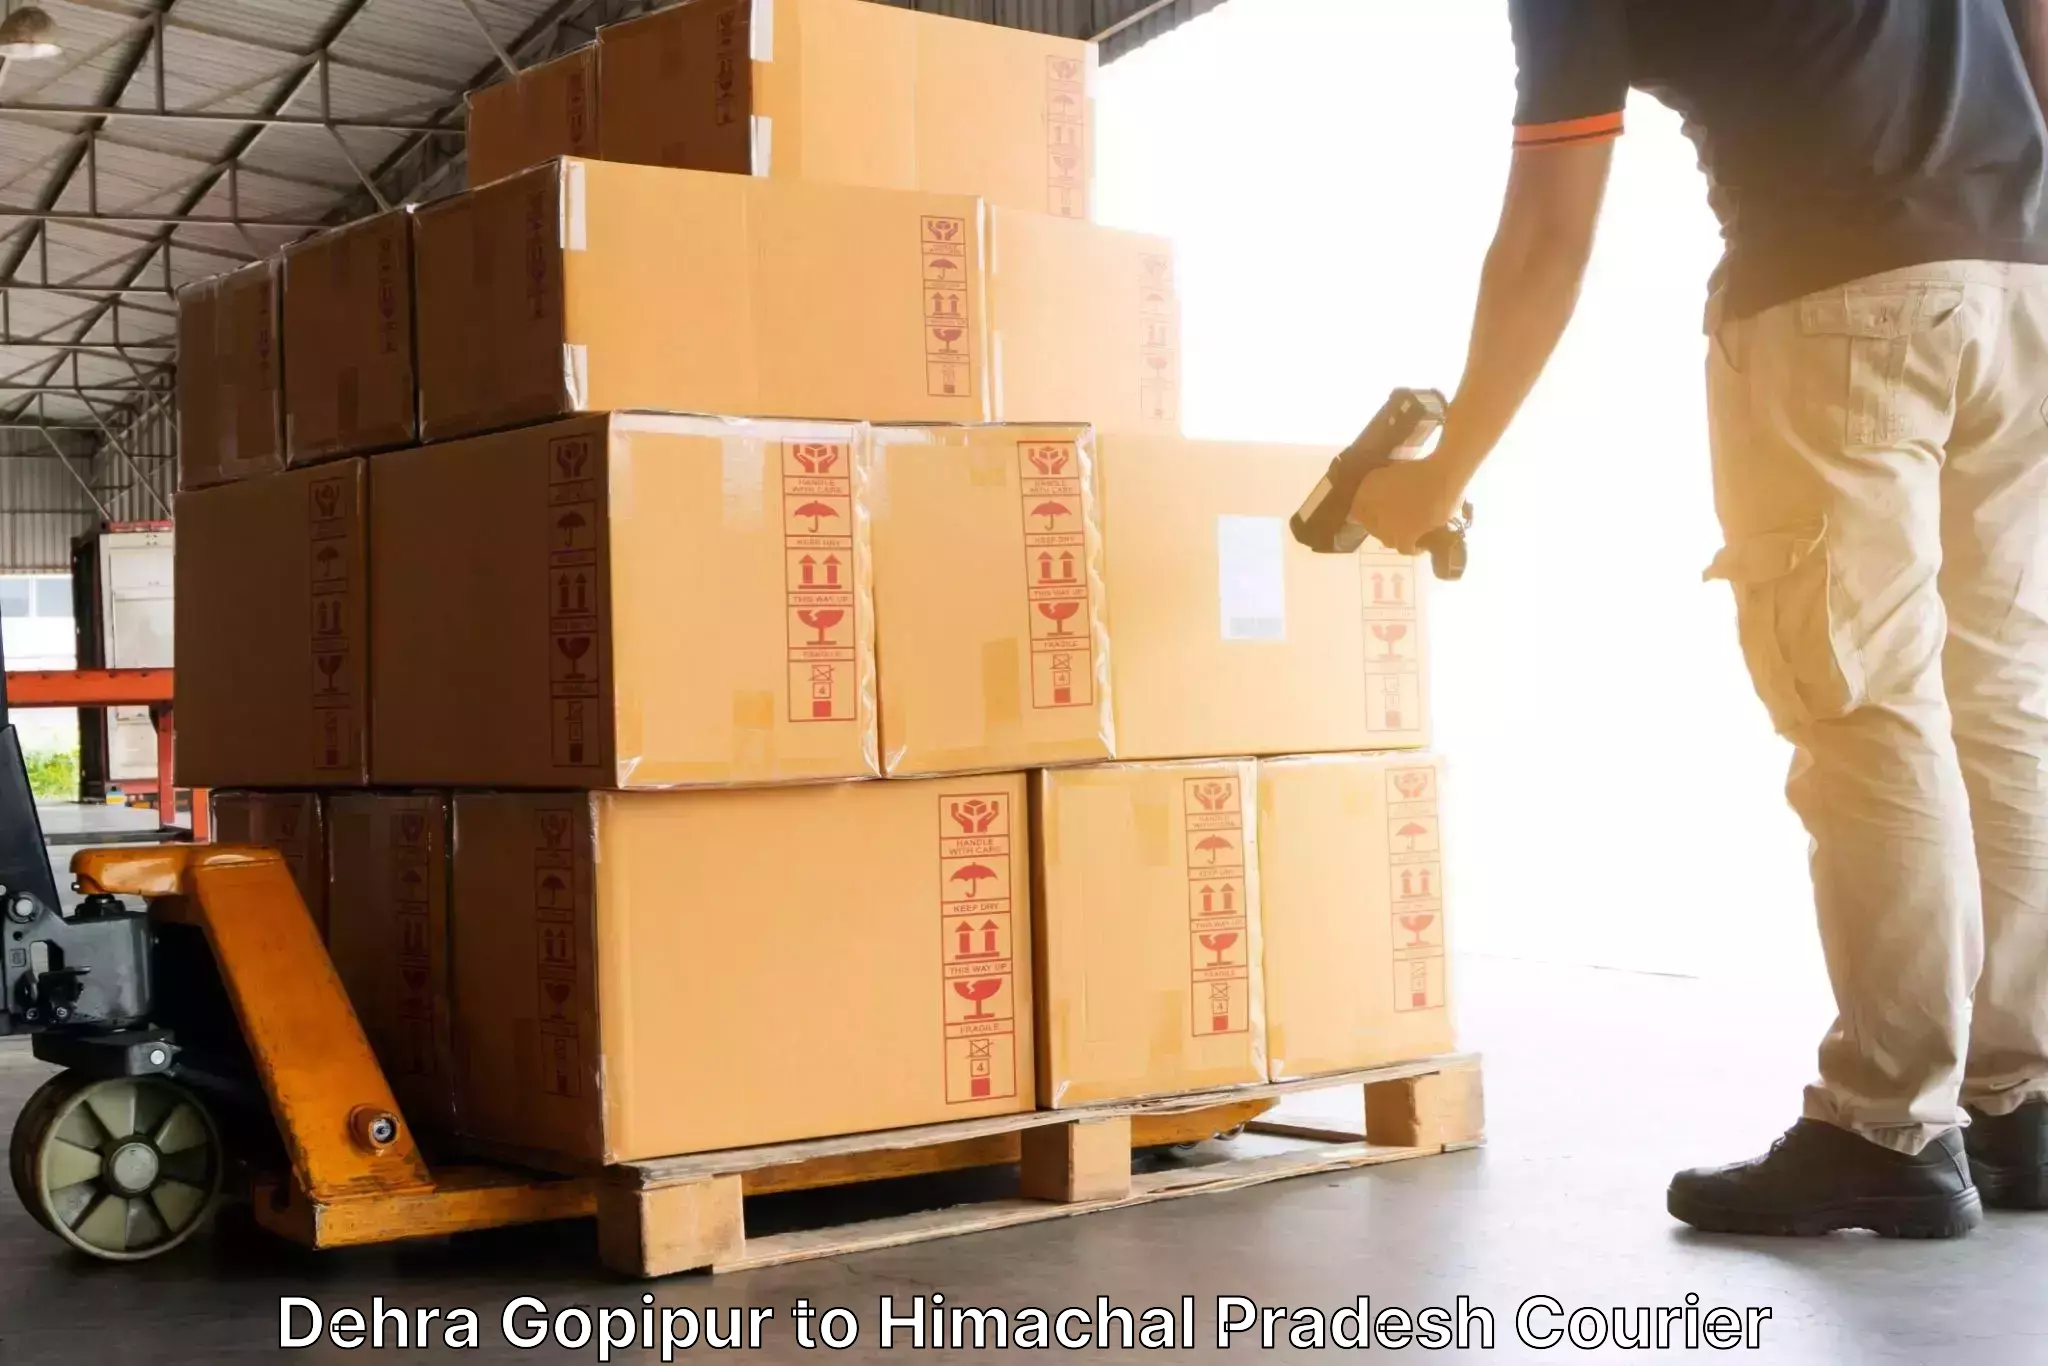 Efficient cargo handling in Dehra Gopipur to Sundar Nagar